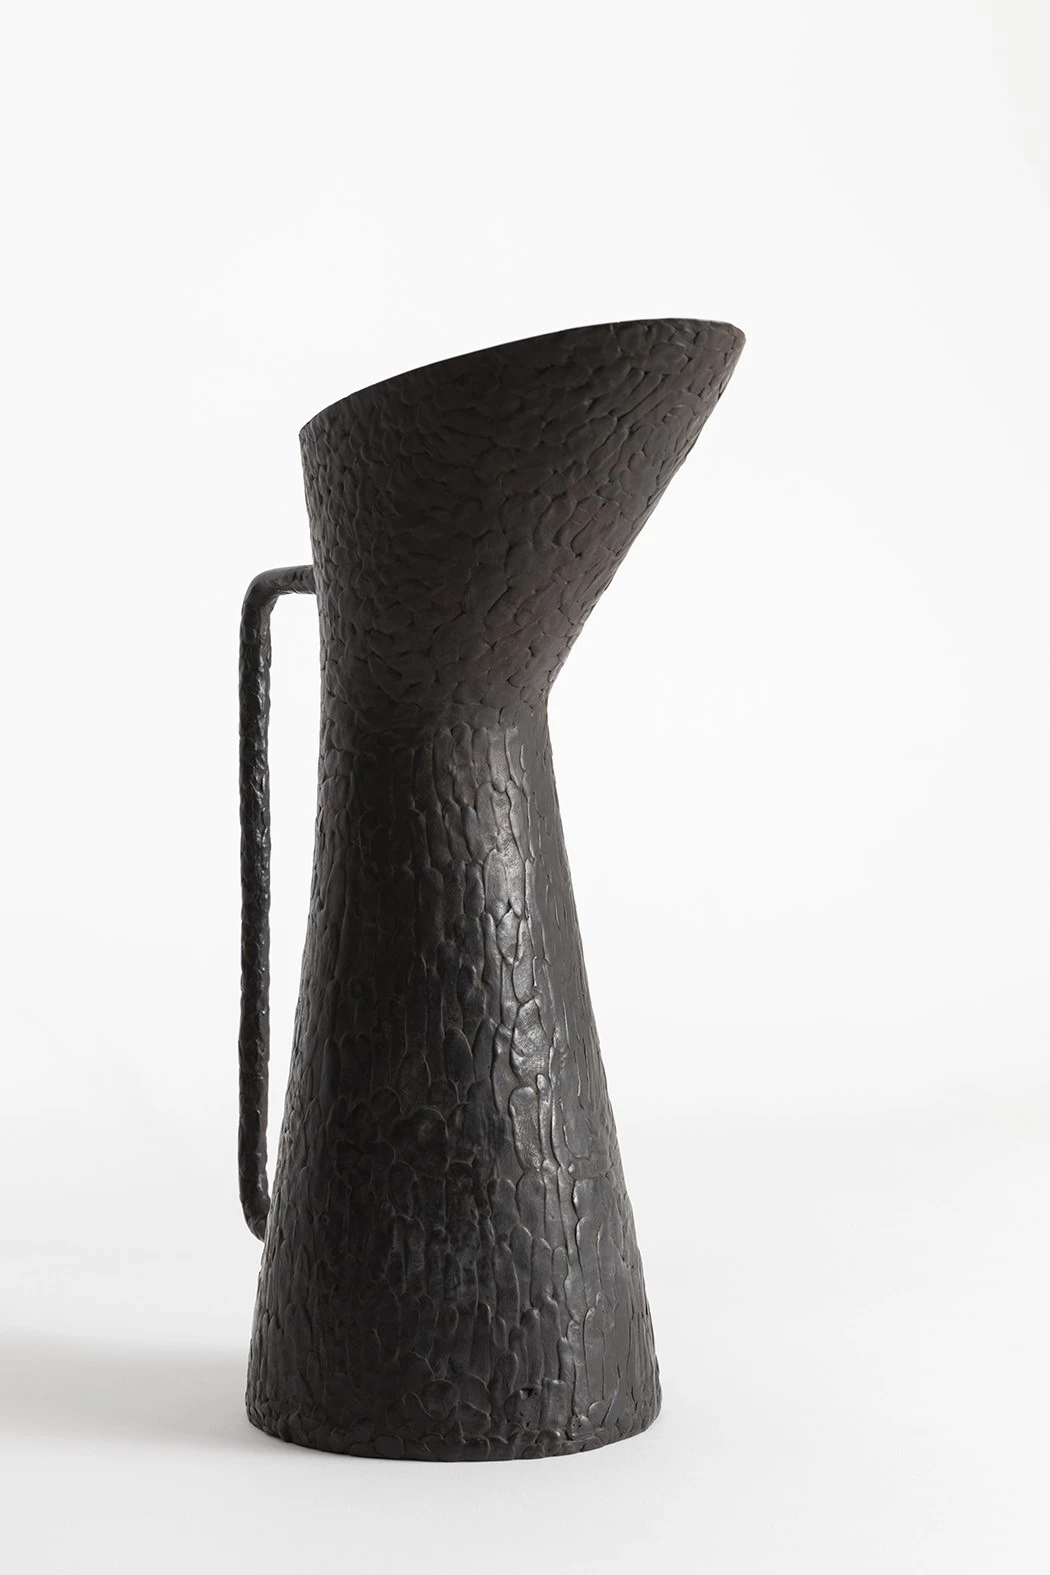 Broc #1 - Guillaume Bardet - Vase - Galerie kreo